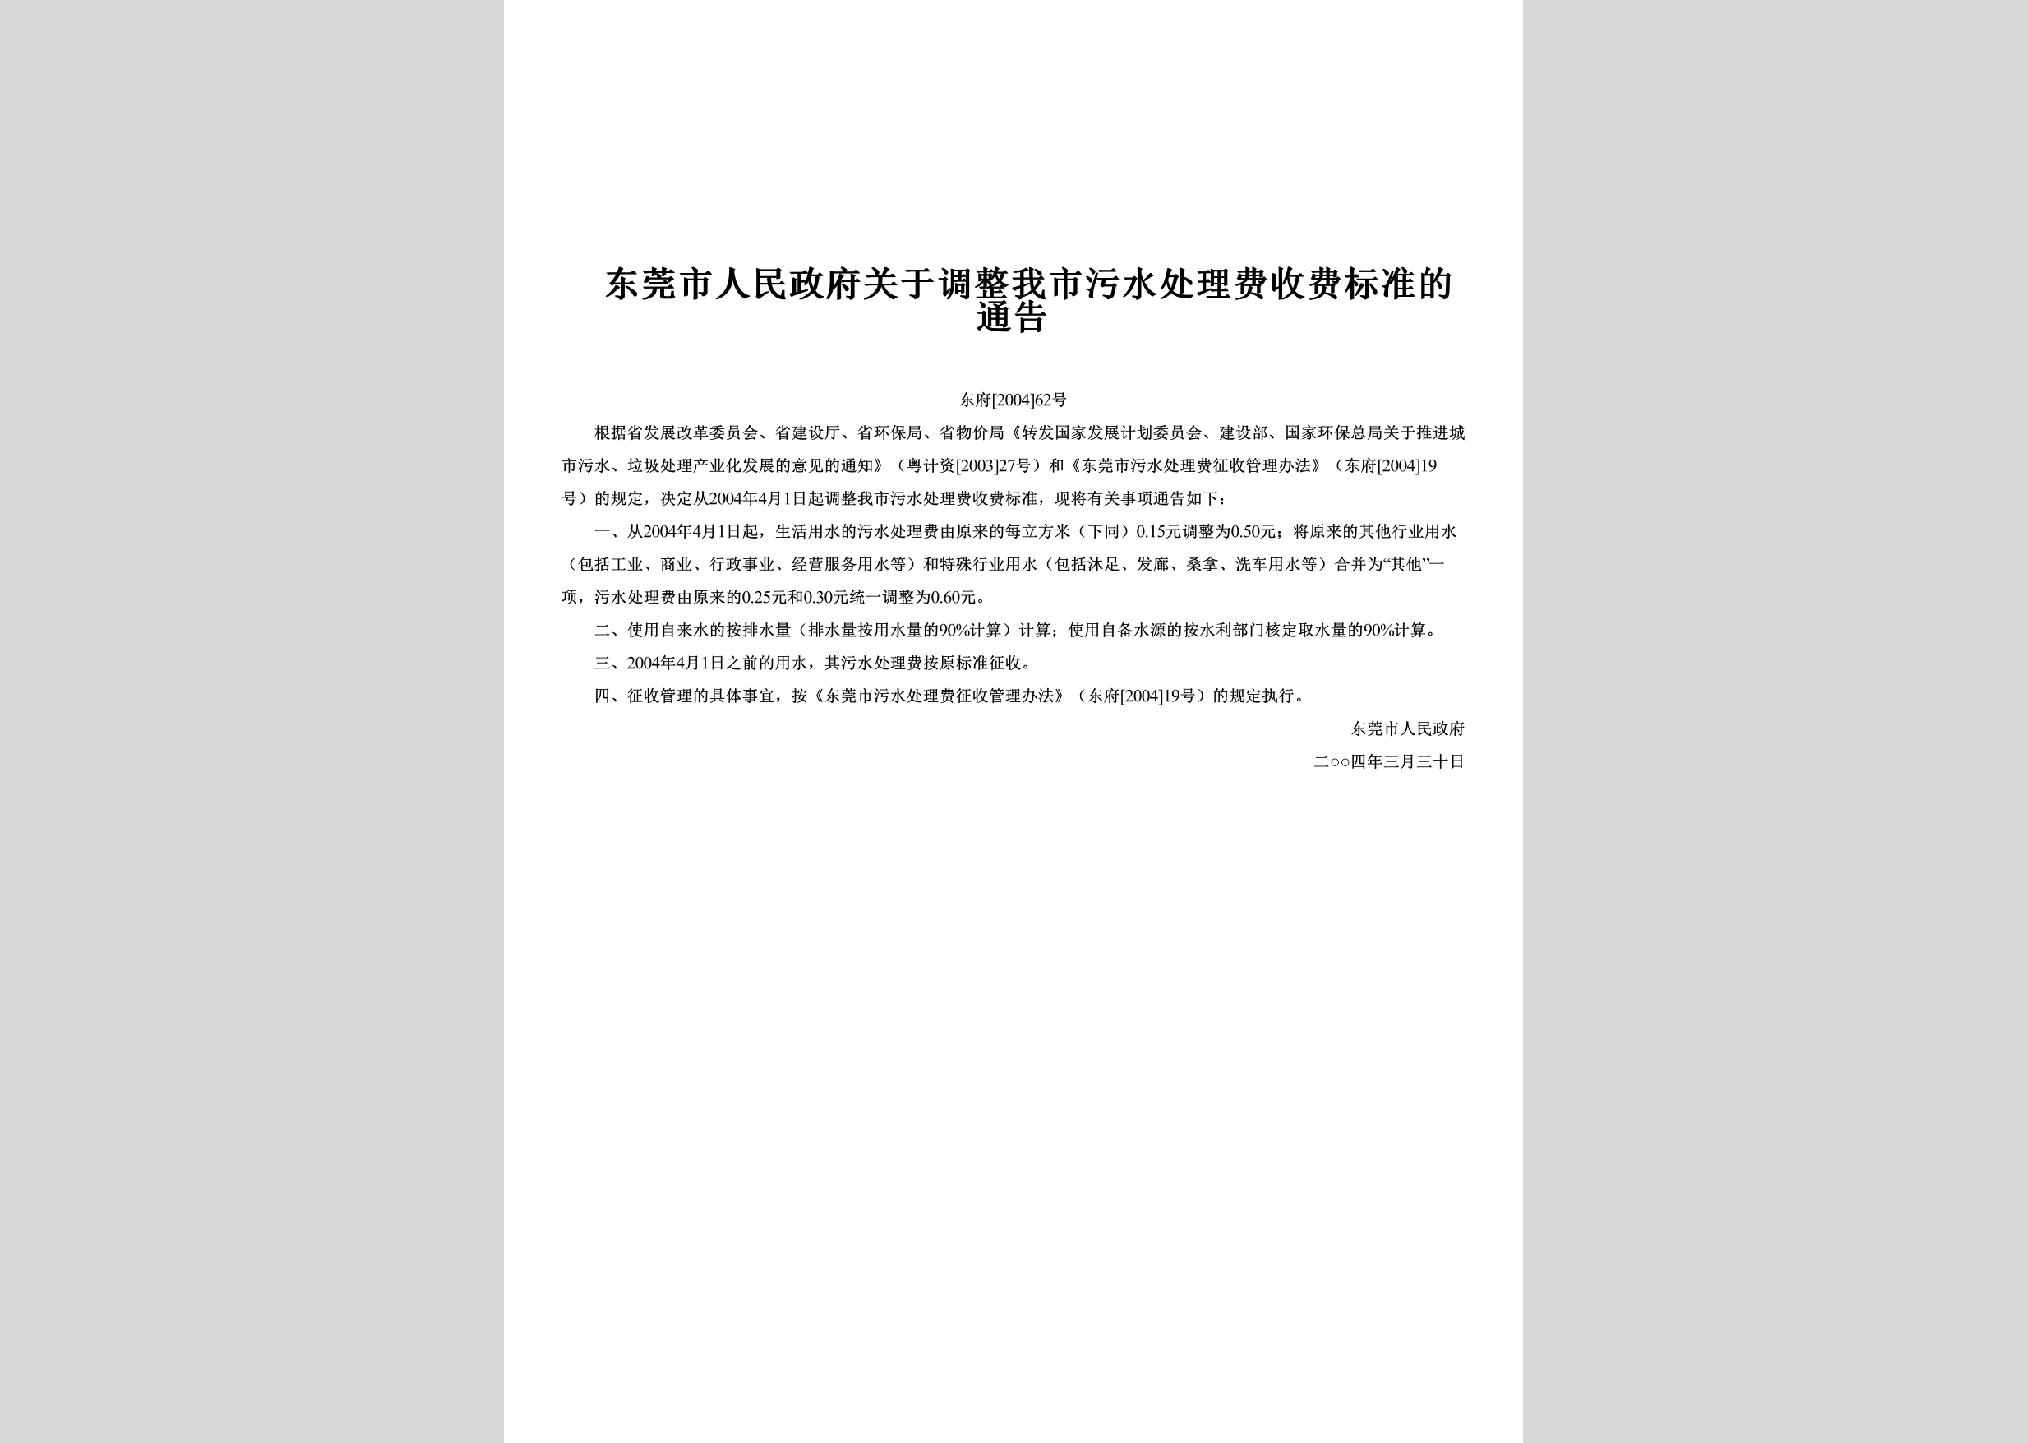 粤建市[2010]86号：《关于开展市场中介组织防治腐败工作的实施方案》的通知